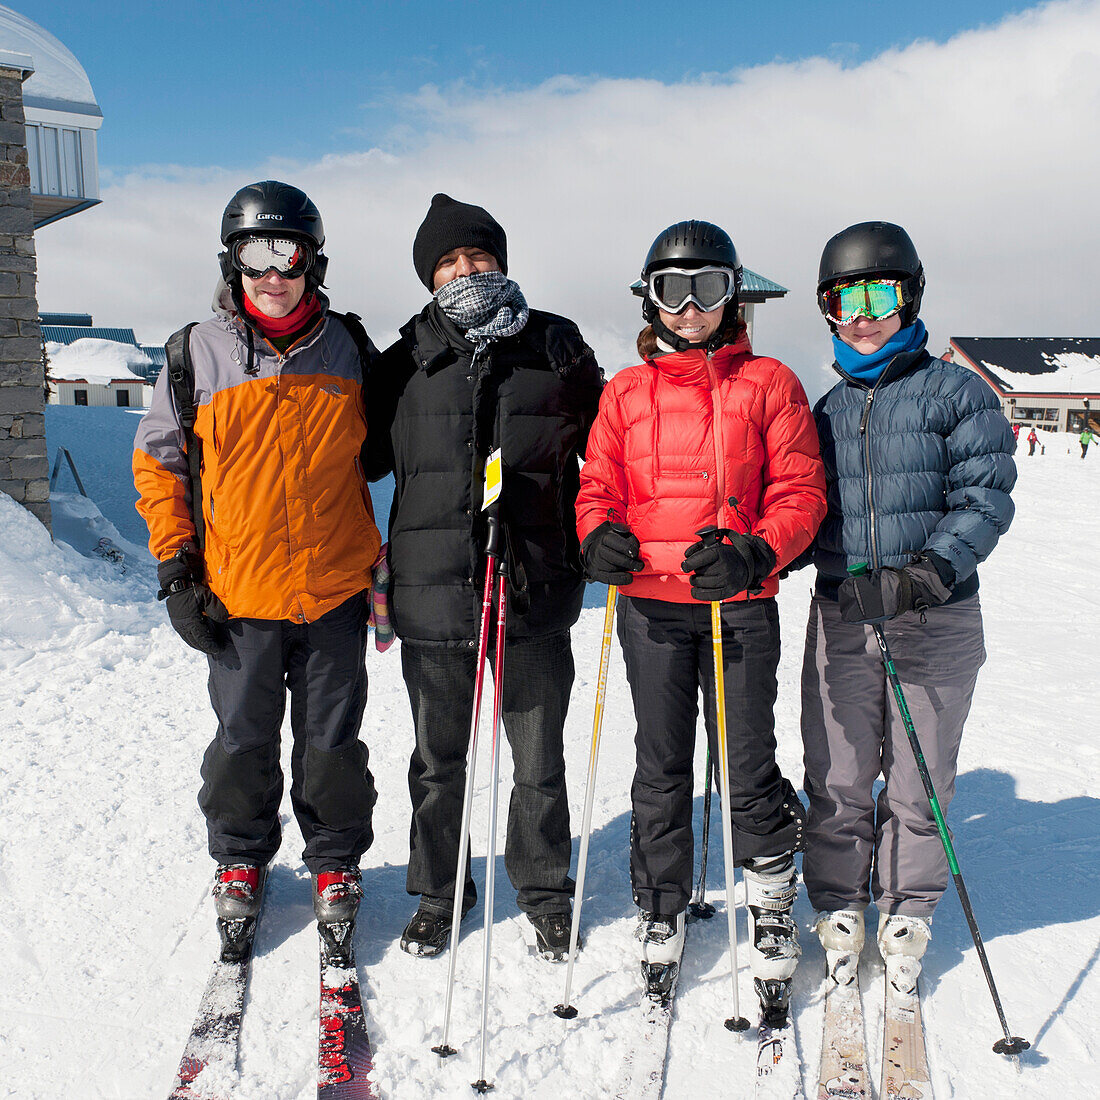 Vier Skifahrer in einem Skigebiet; Whistler British Columbia Kanada